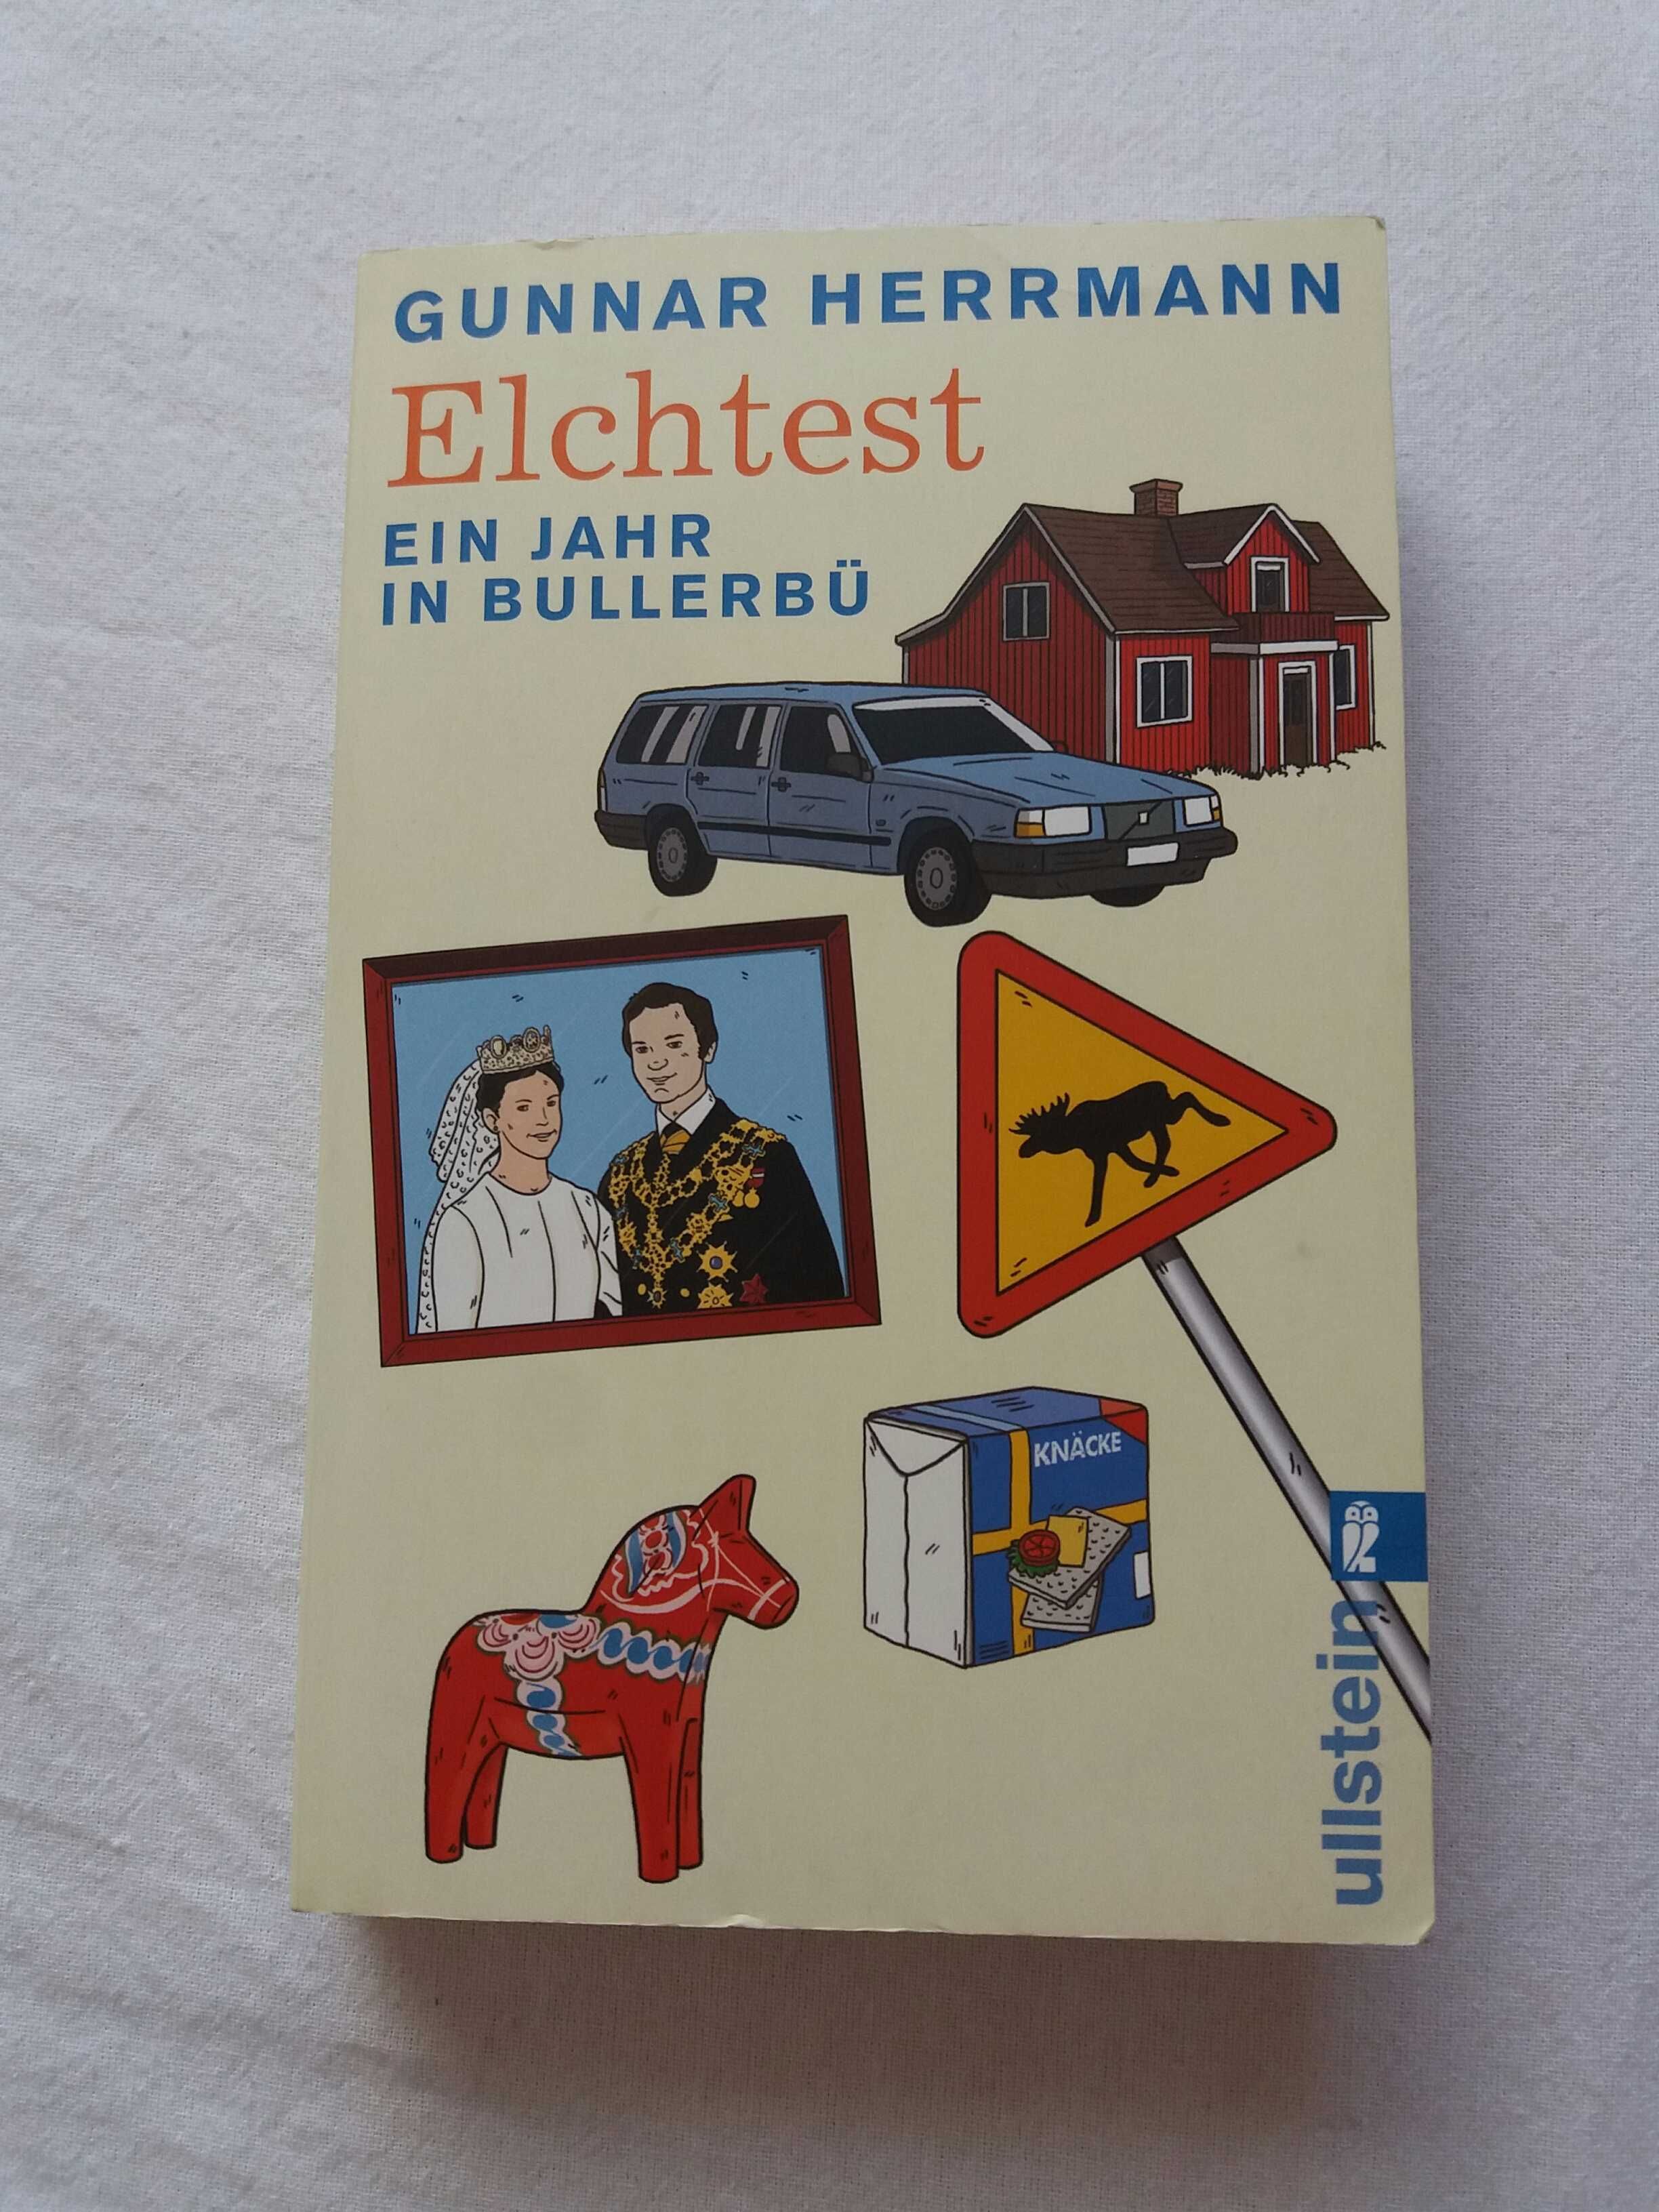 Elchtest Ein Jahr In Bullerbü Gunnar Herrmann książka po niemiecku bdb